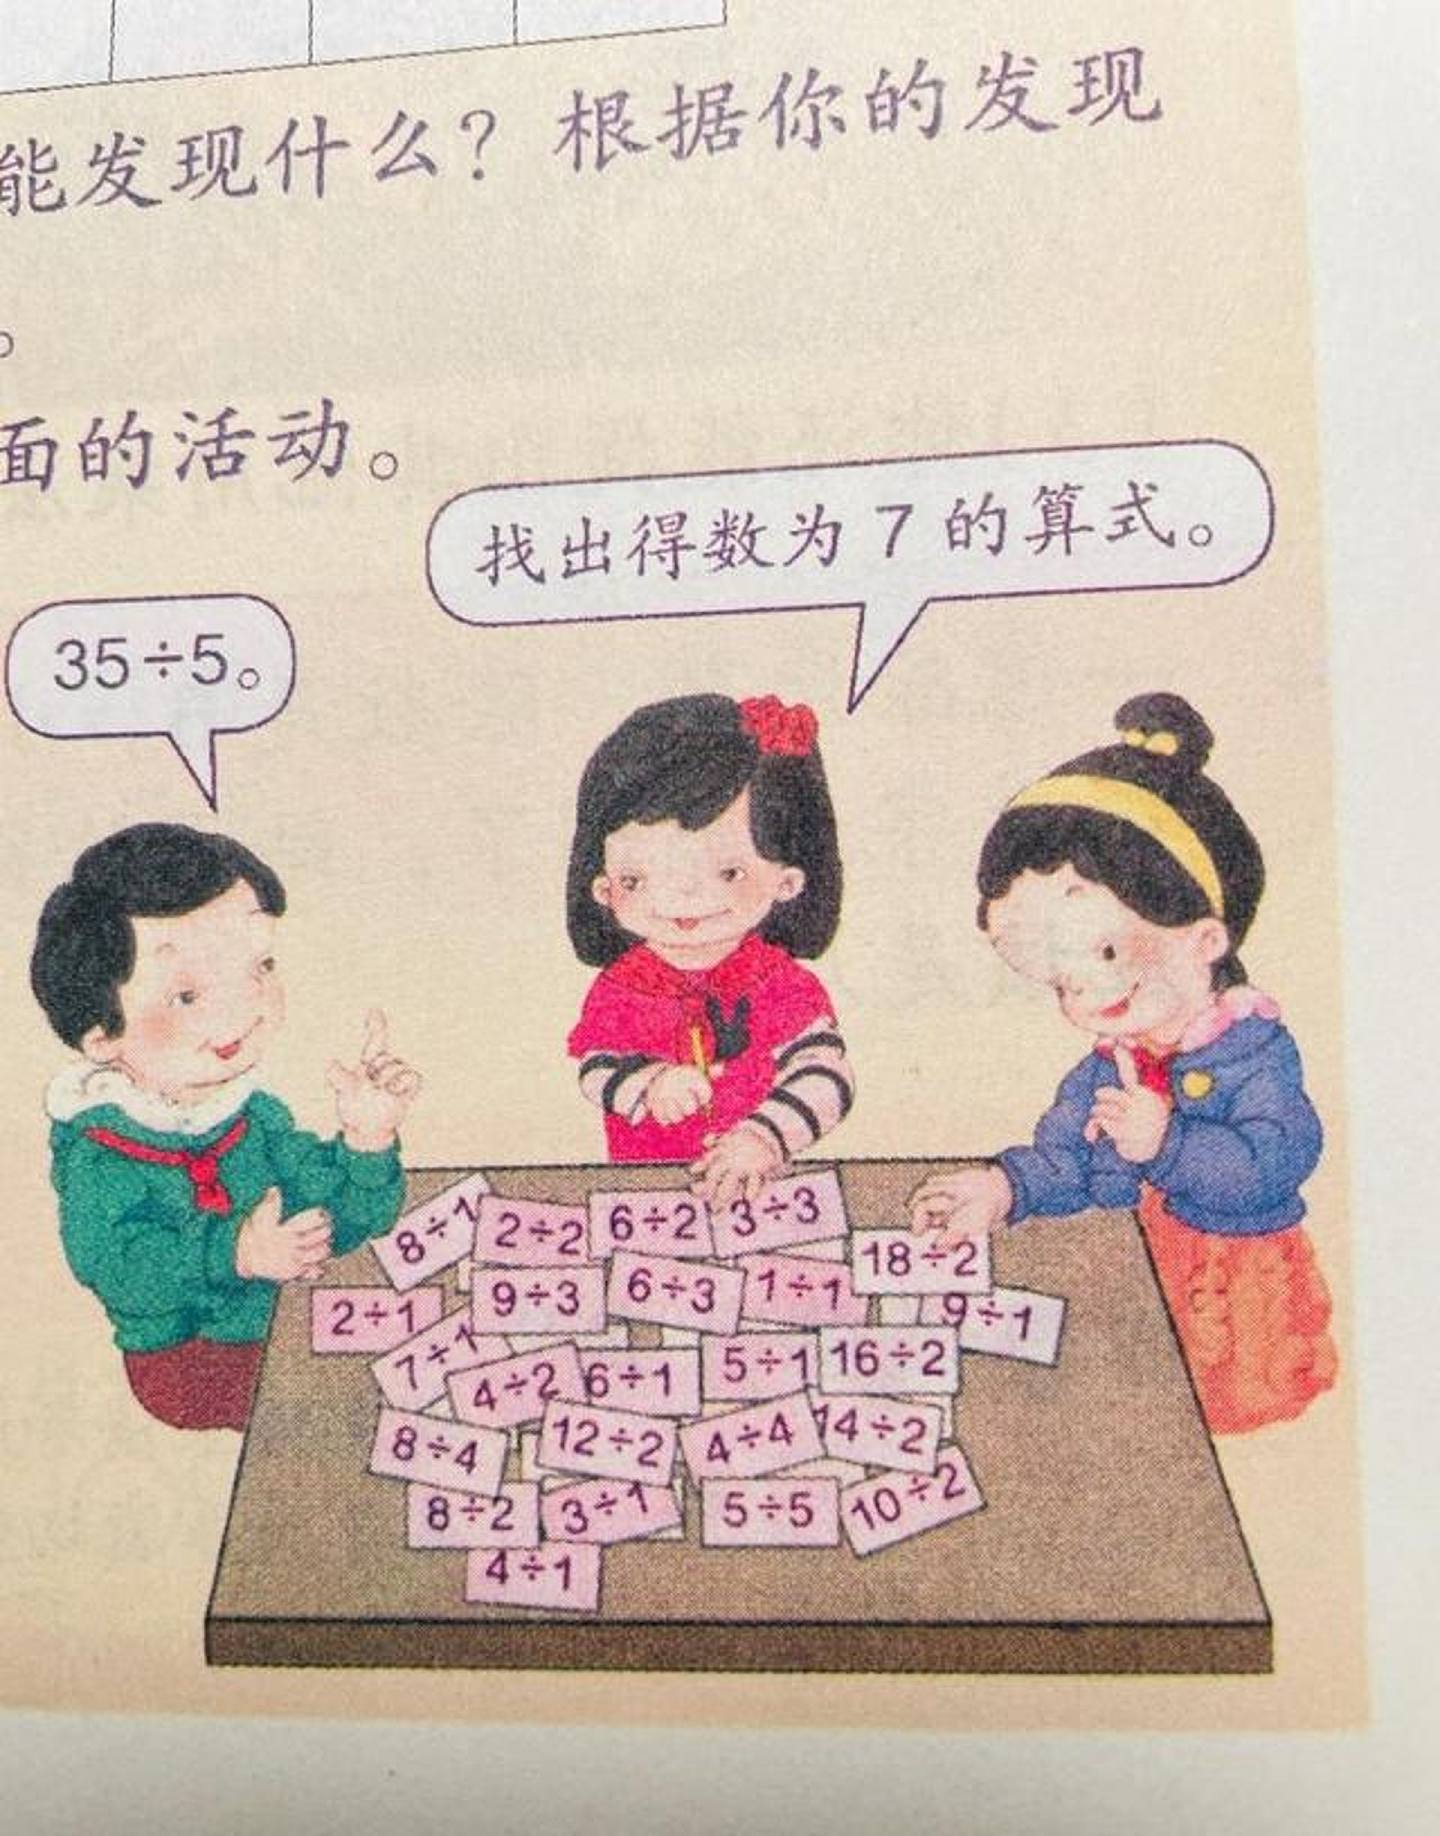 人教版数学教材插画形象被指丑化中国孩子。 （微博）